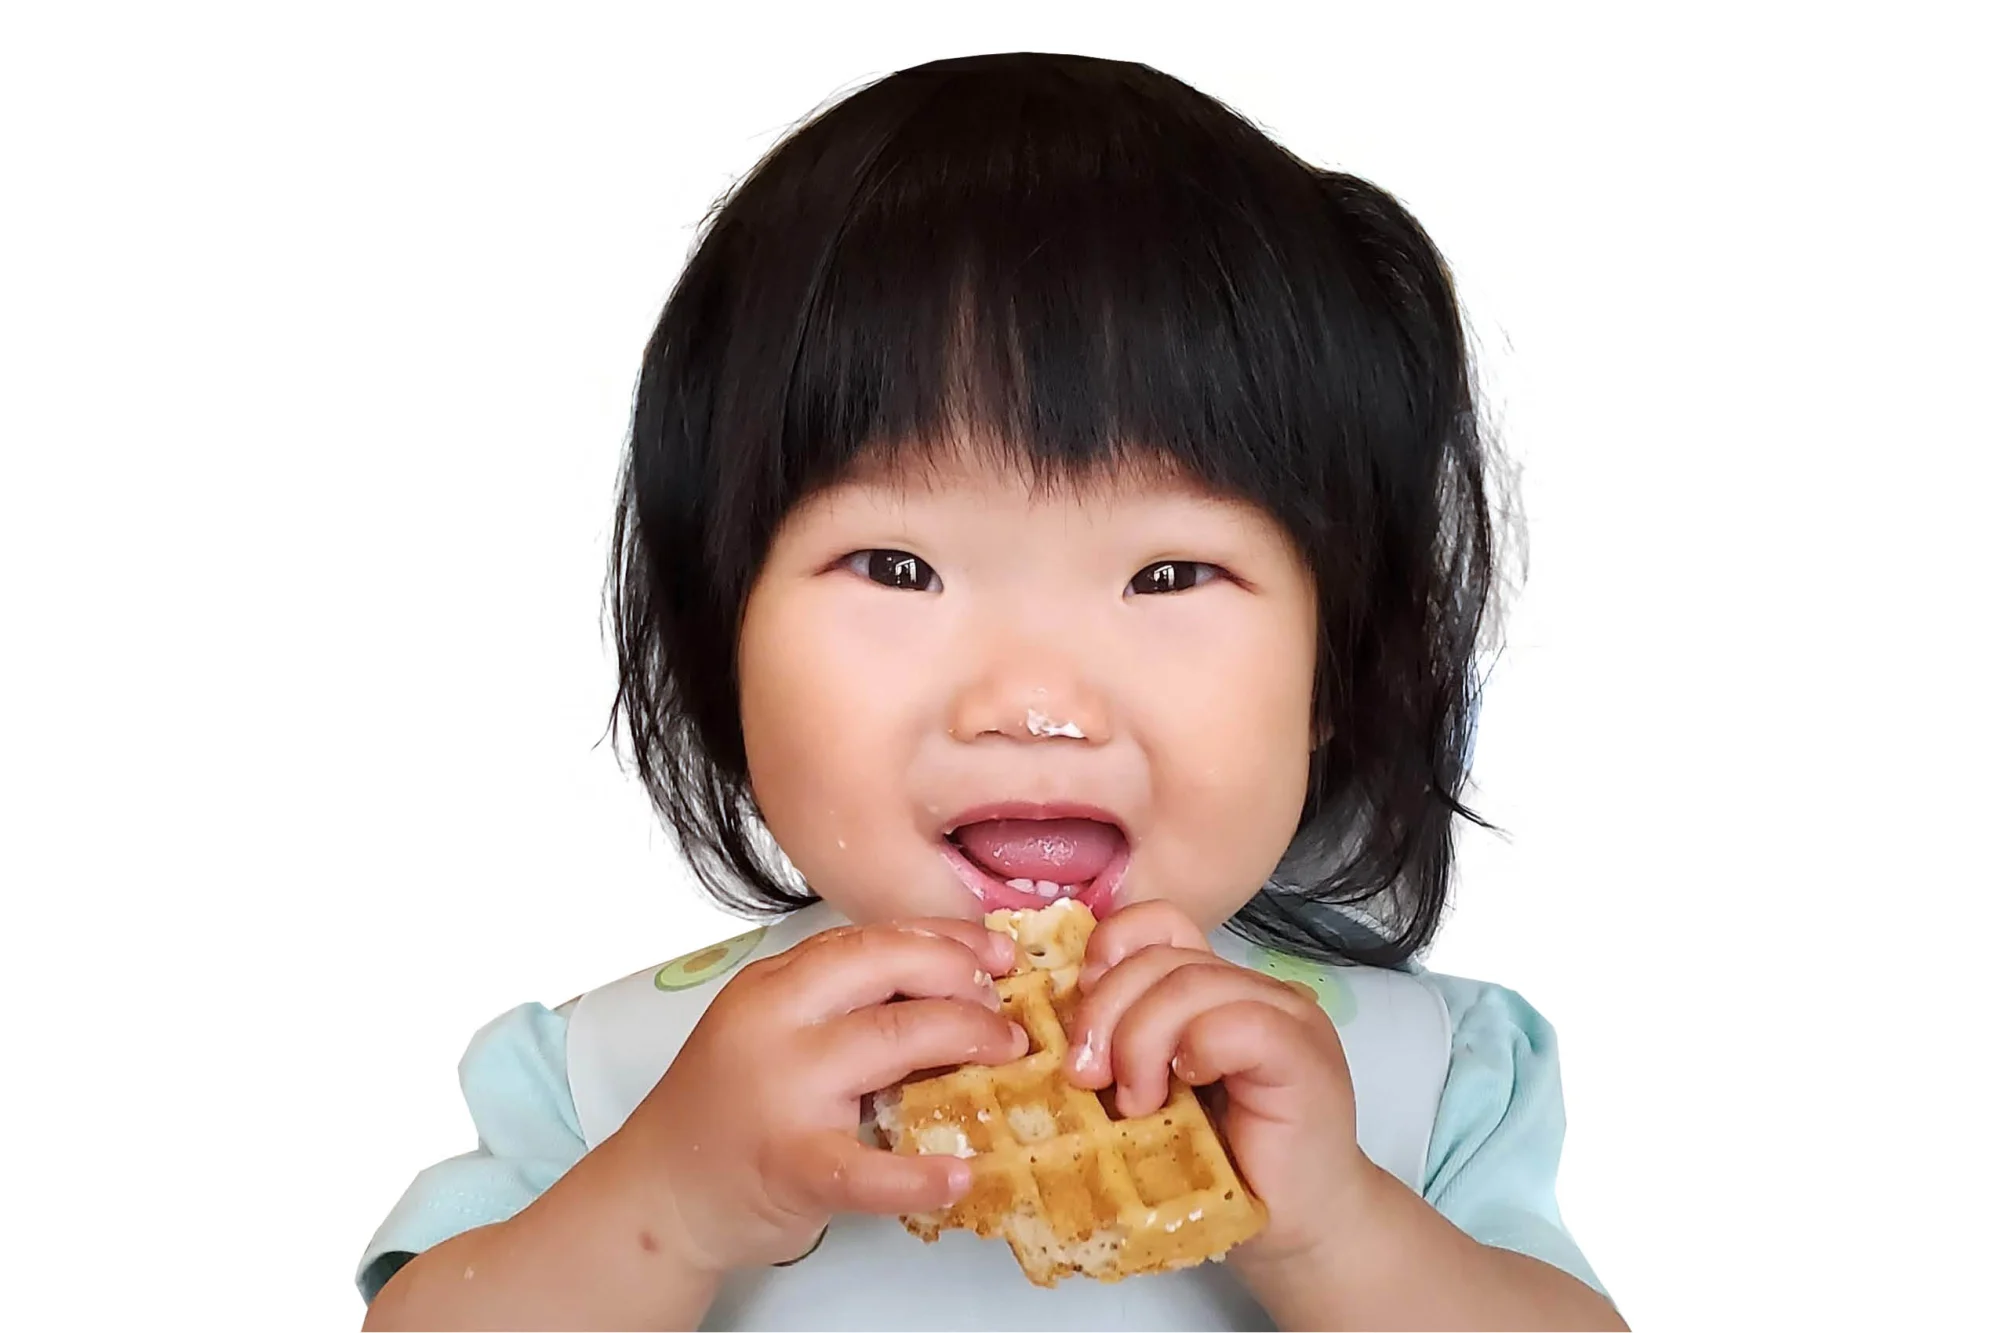 13 month toddler enjoying a waffle